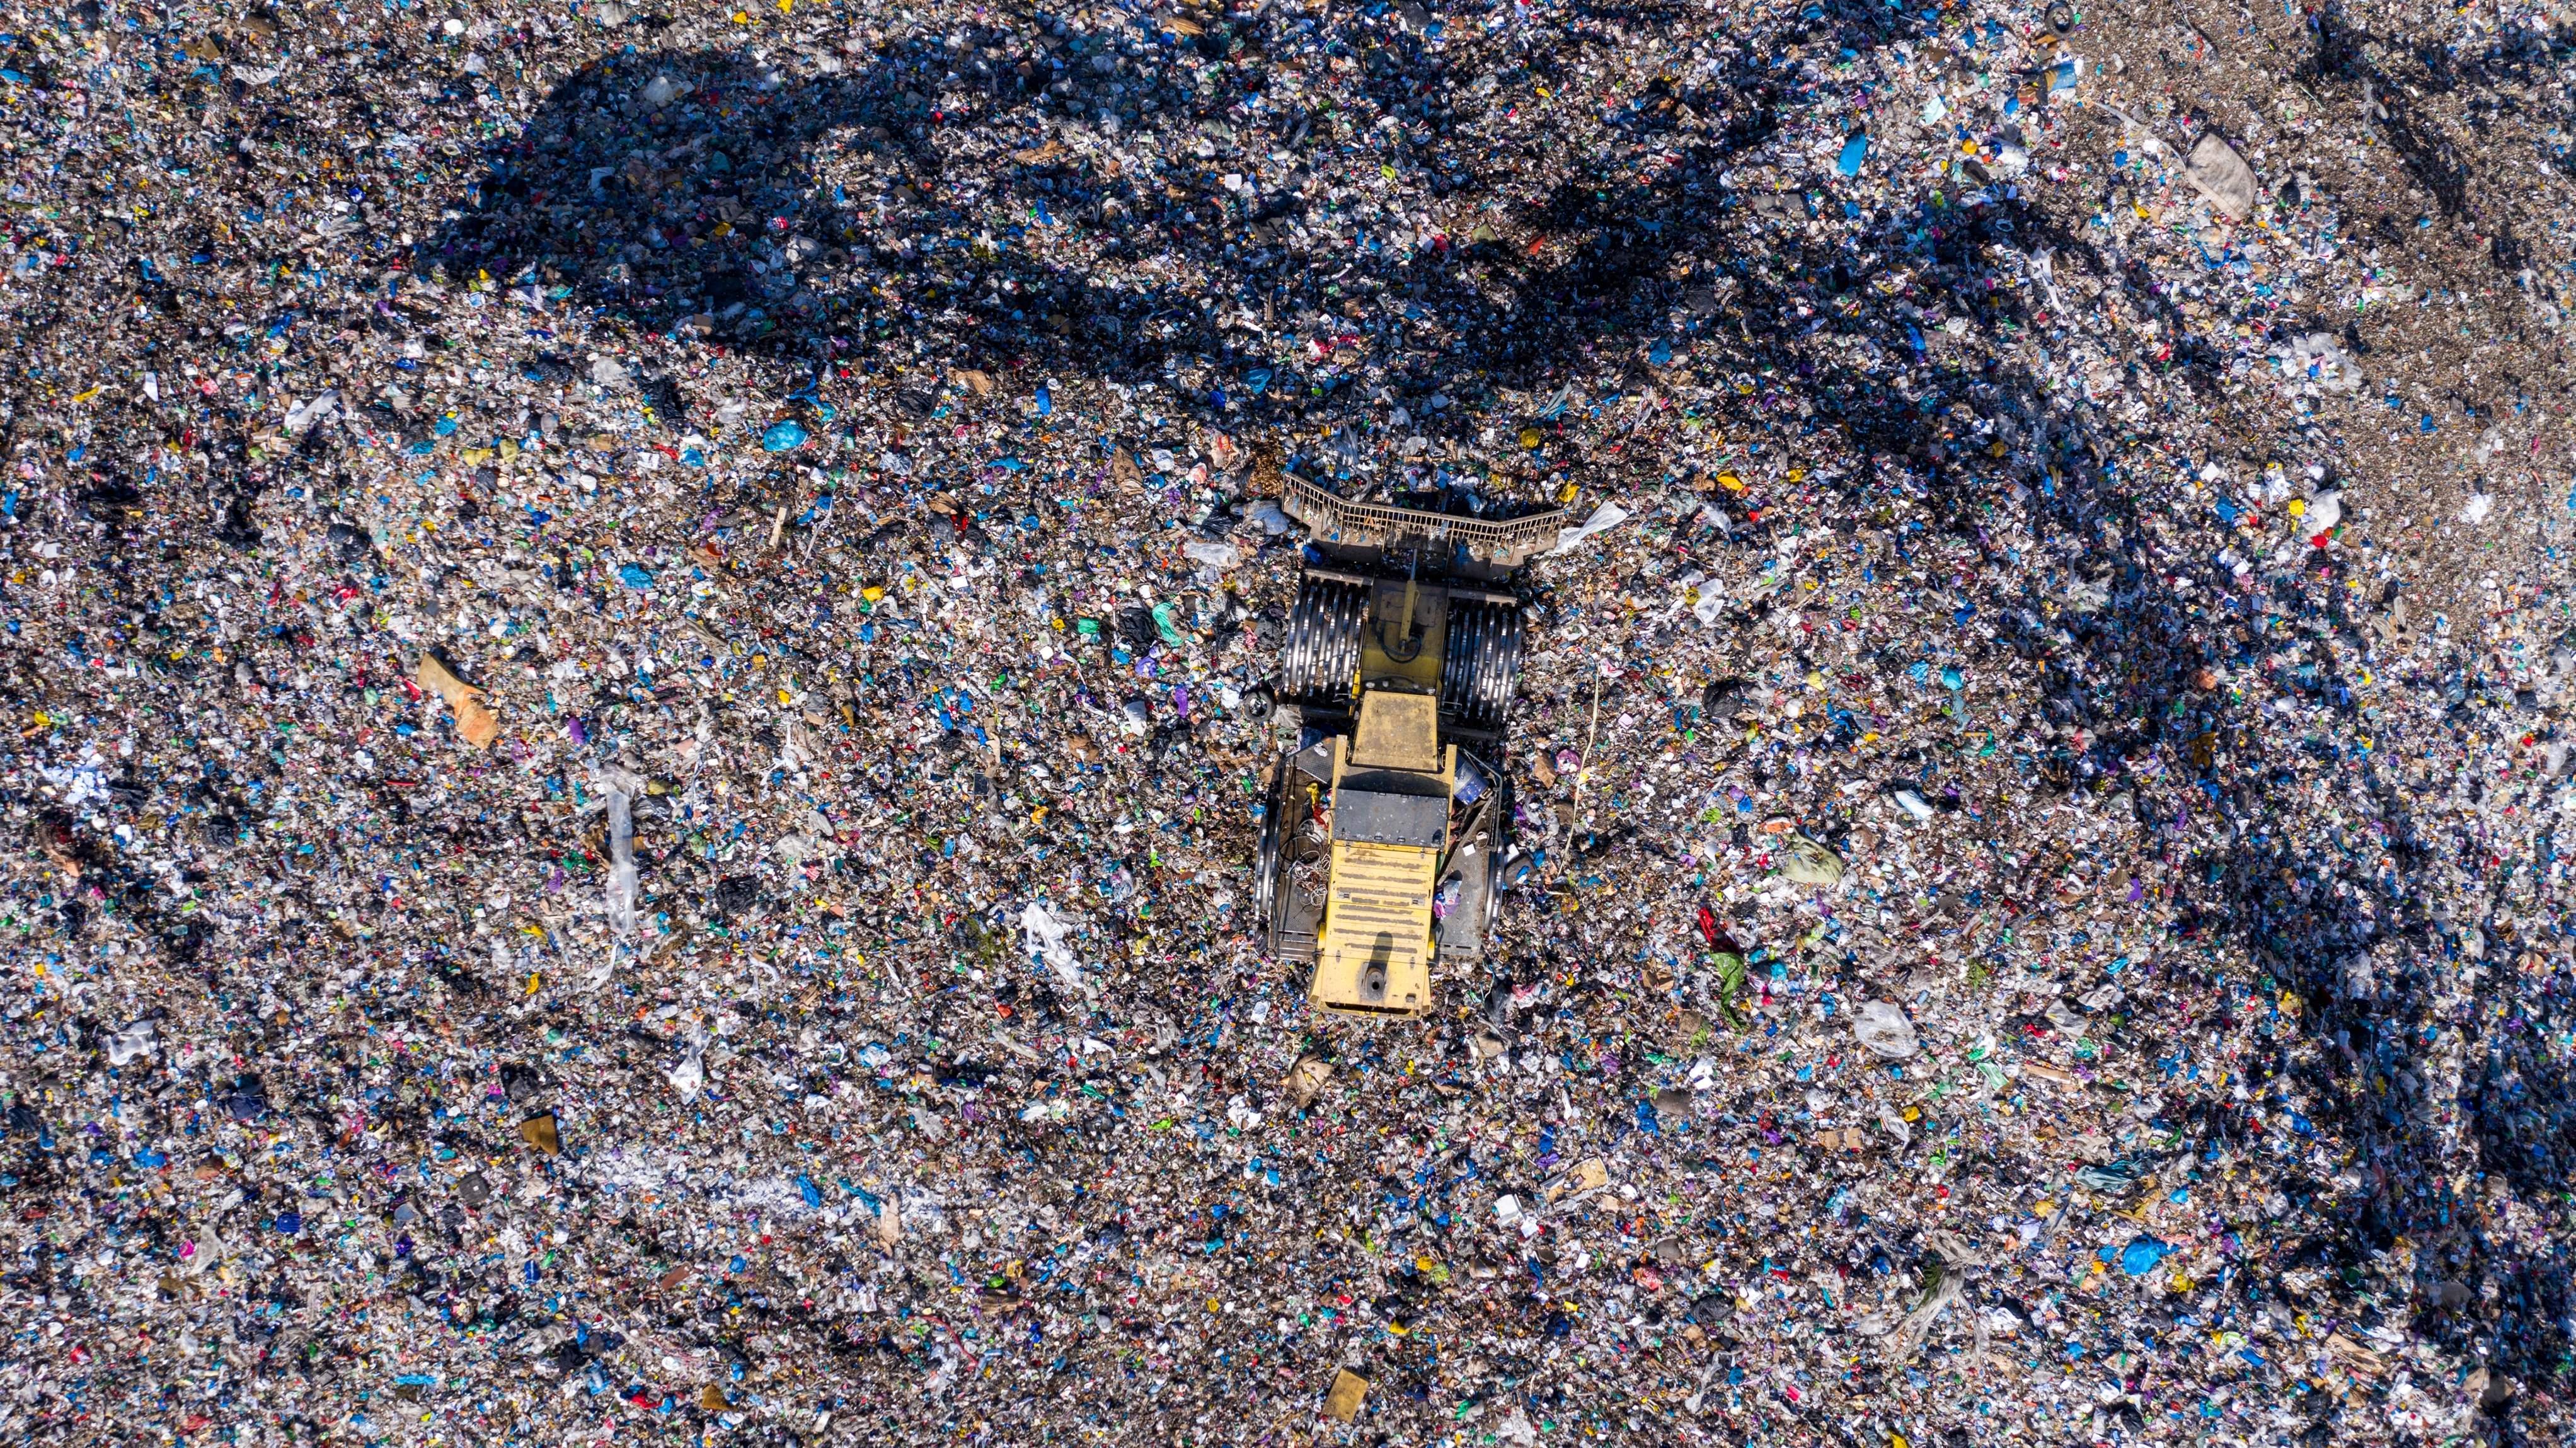 Los 5 basureros globales más exagerados: estamos creando nueva geografía a base de basura